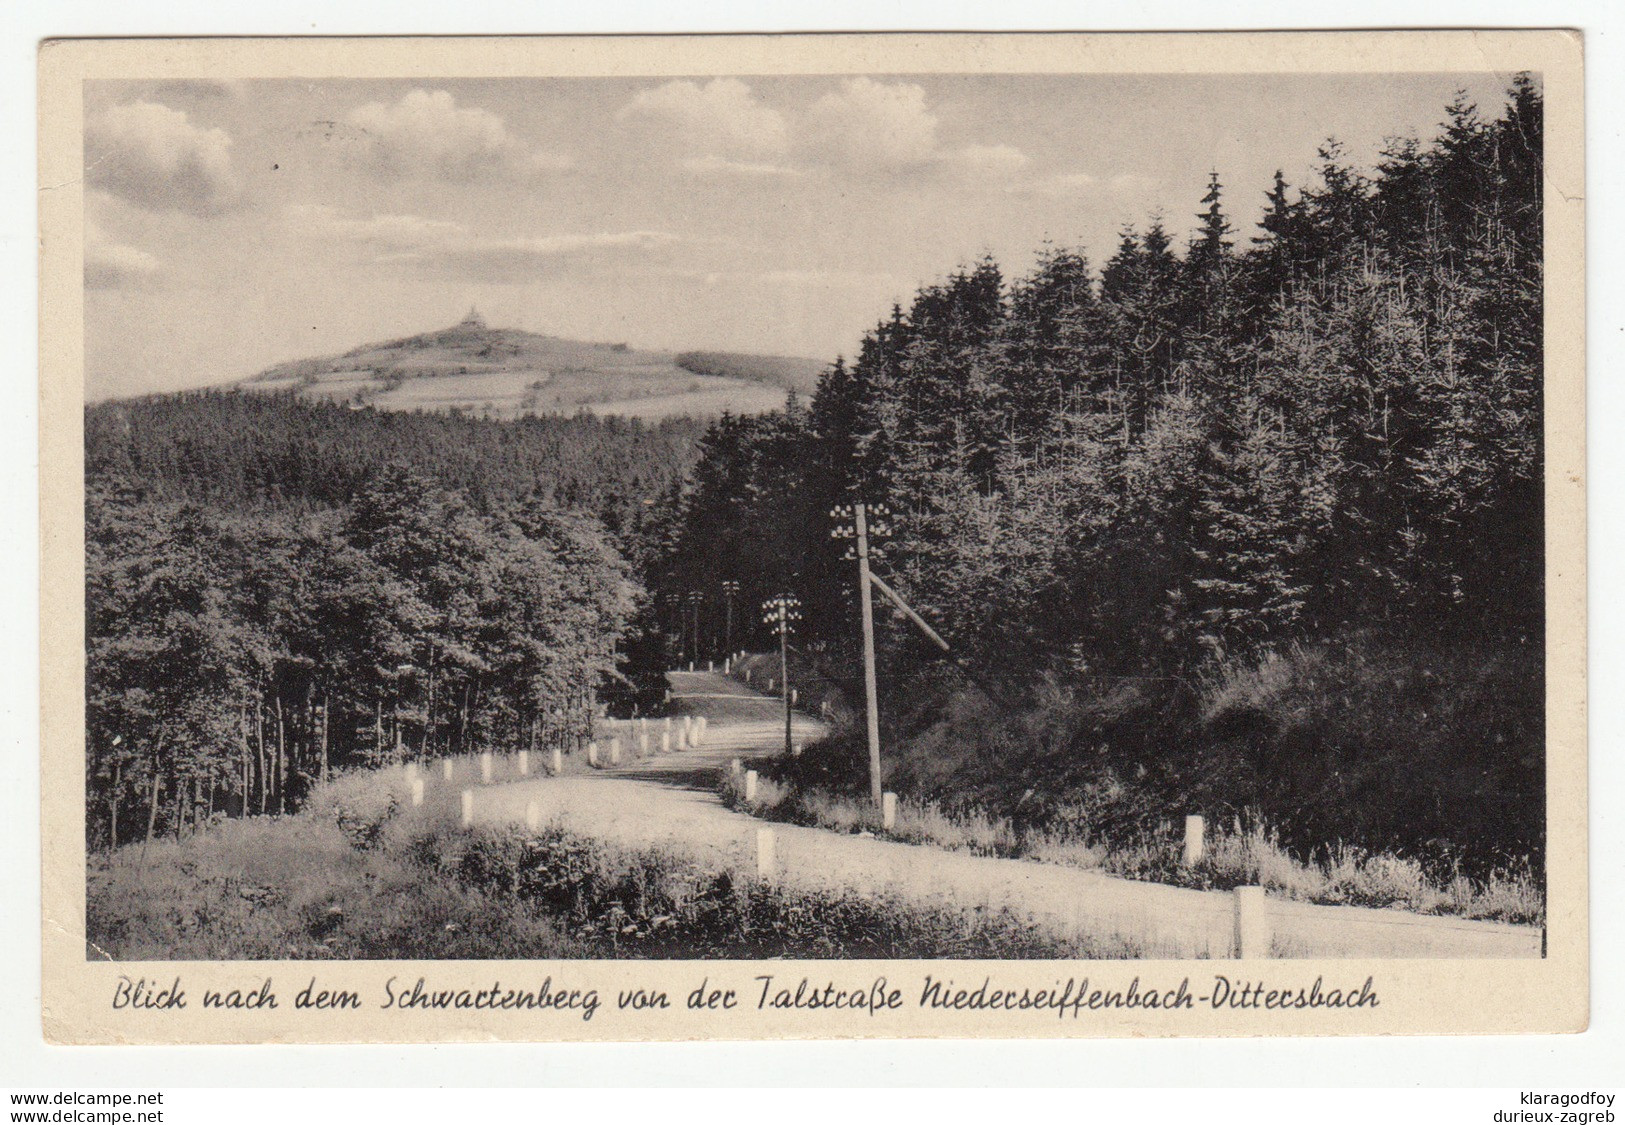 Talstraße Niederseiffenbach-Dittersbach Old Postcard Travelled 1941 Leipzig Pmk B180820 - Neuhausen (Erzgeb.)